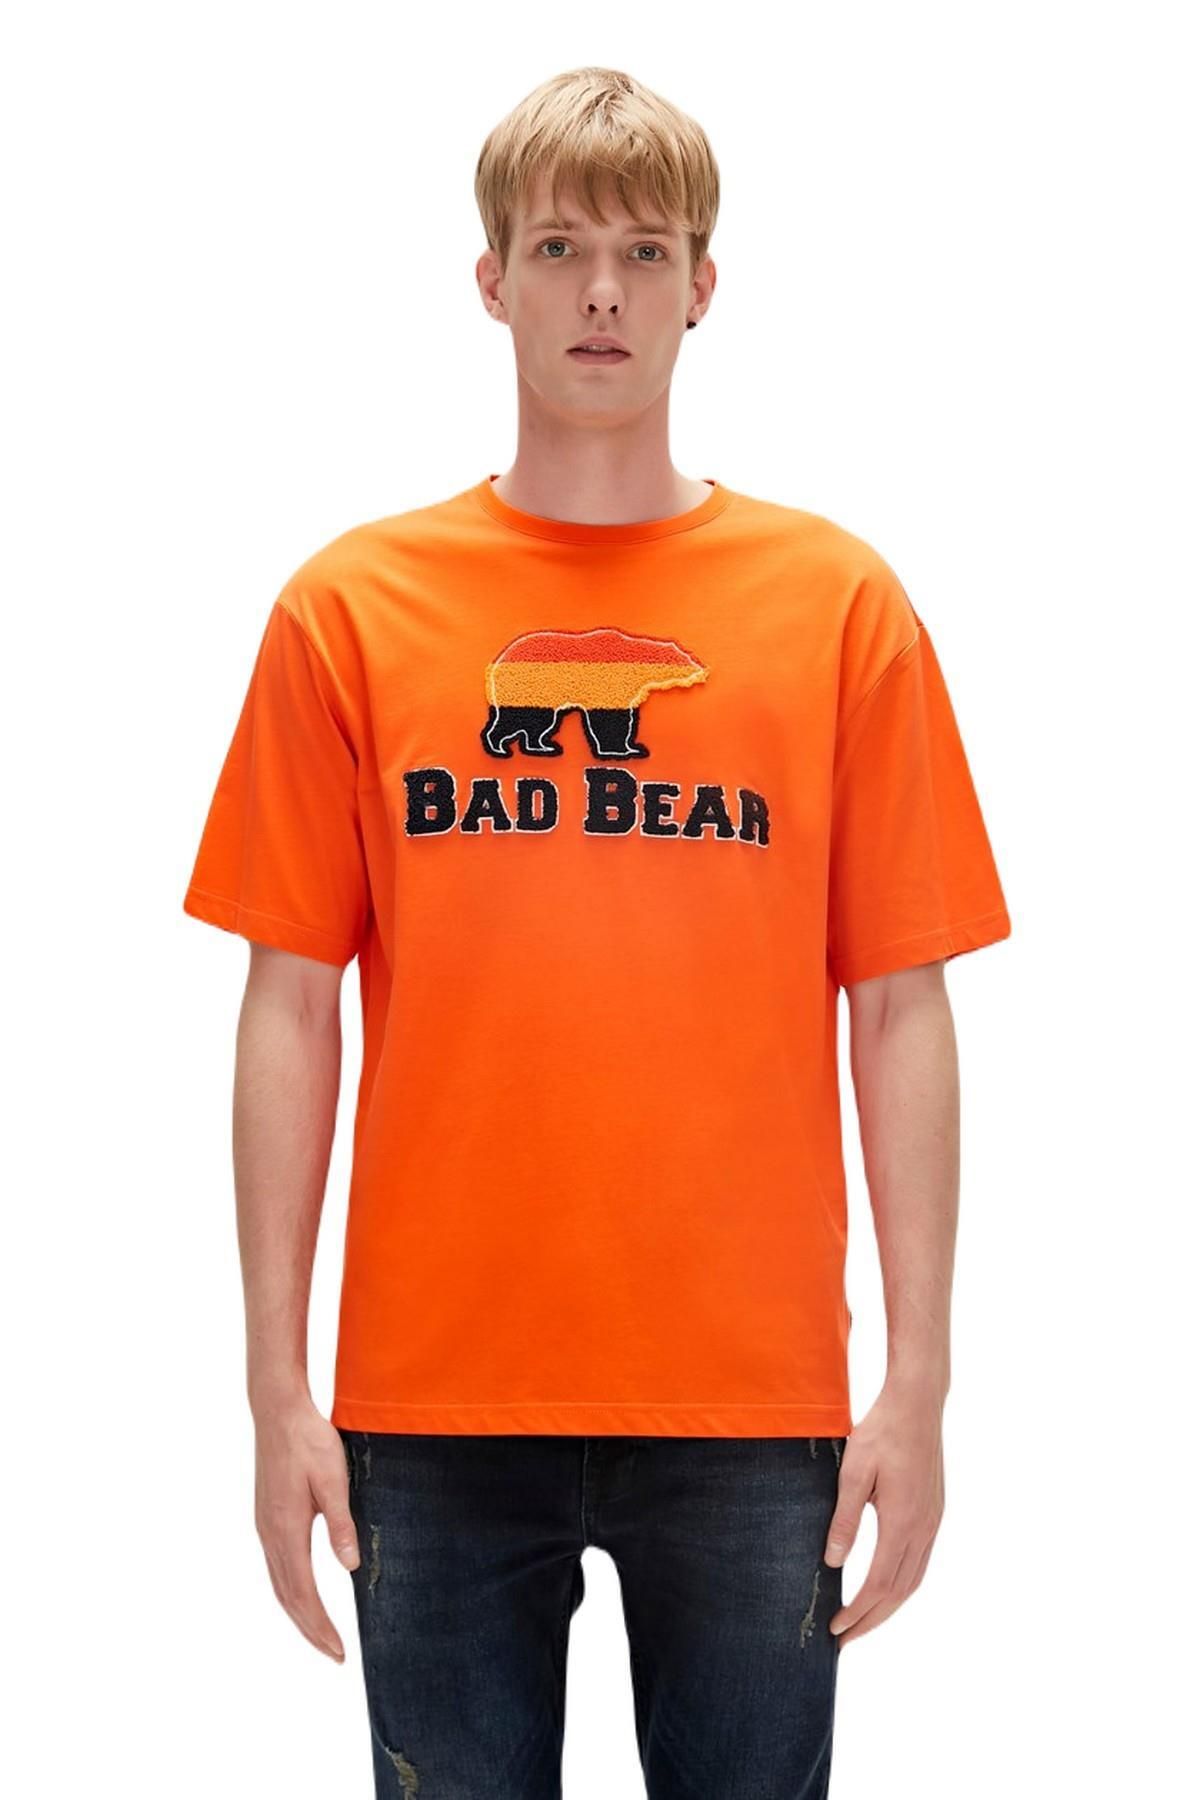 Bad Bear 23.01.07.027-c38 Tripart Erkek T-shirt